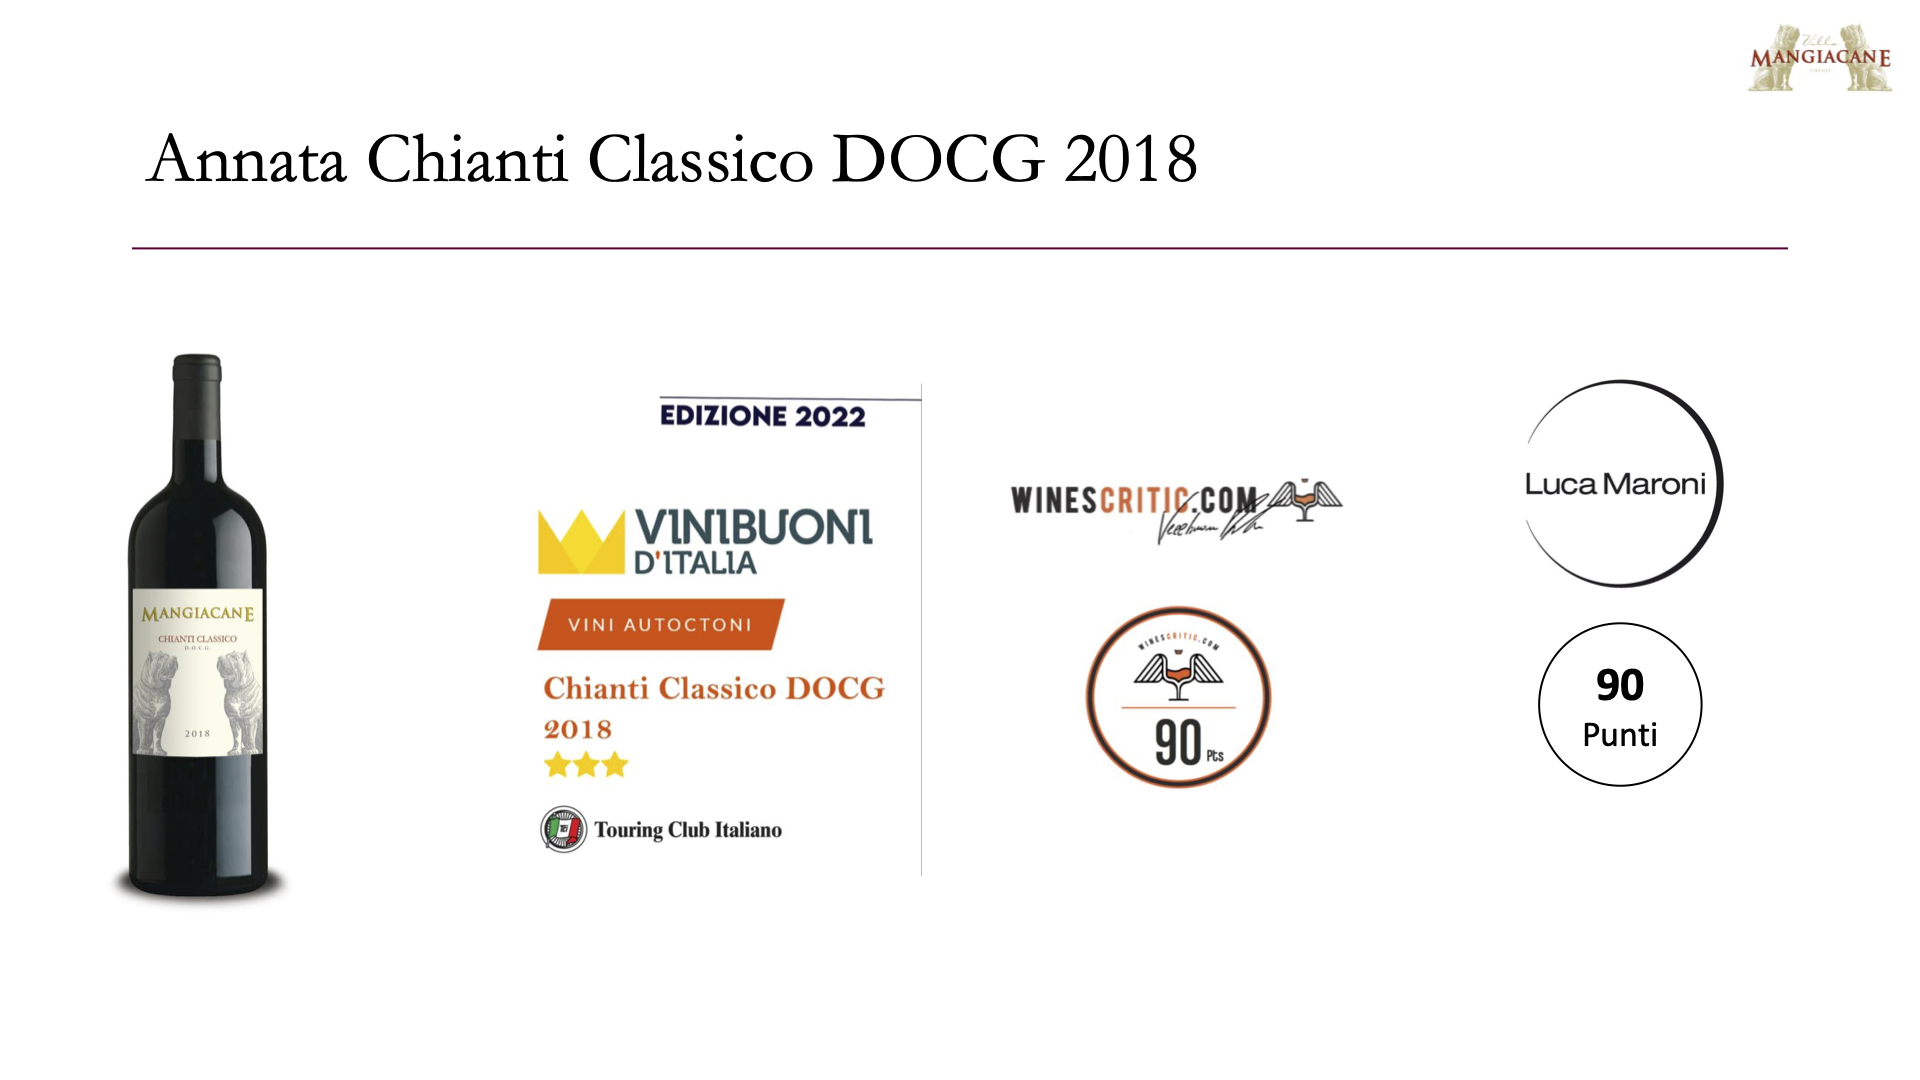 Villa Mangiacane Chianti Classico DOCG